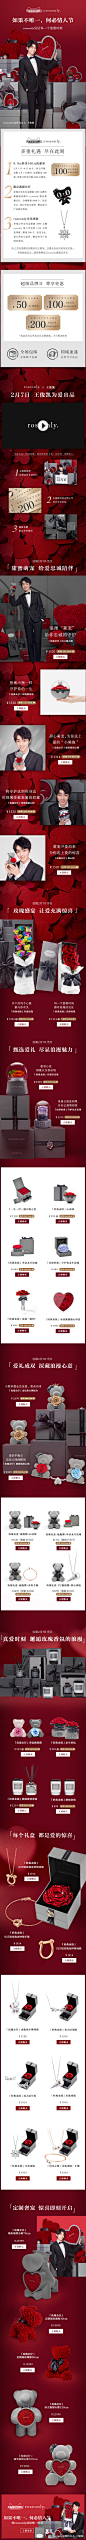 roseonly 天猫年货节 超级品牌日 王俊凯 移动端 页面原创设计